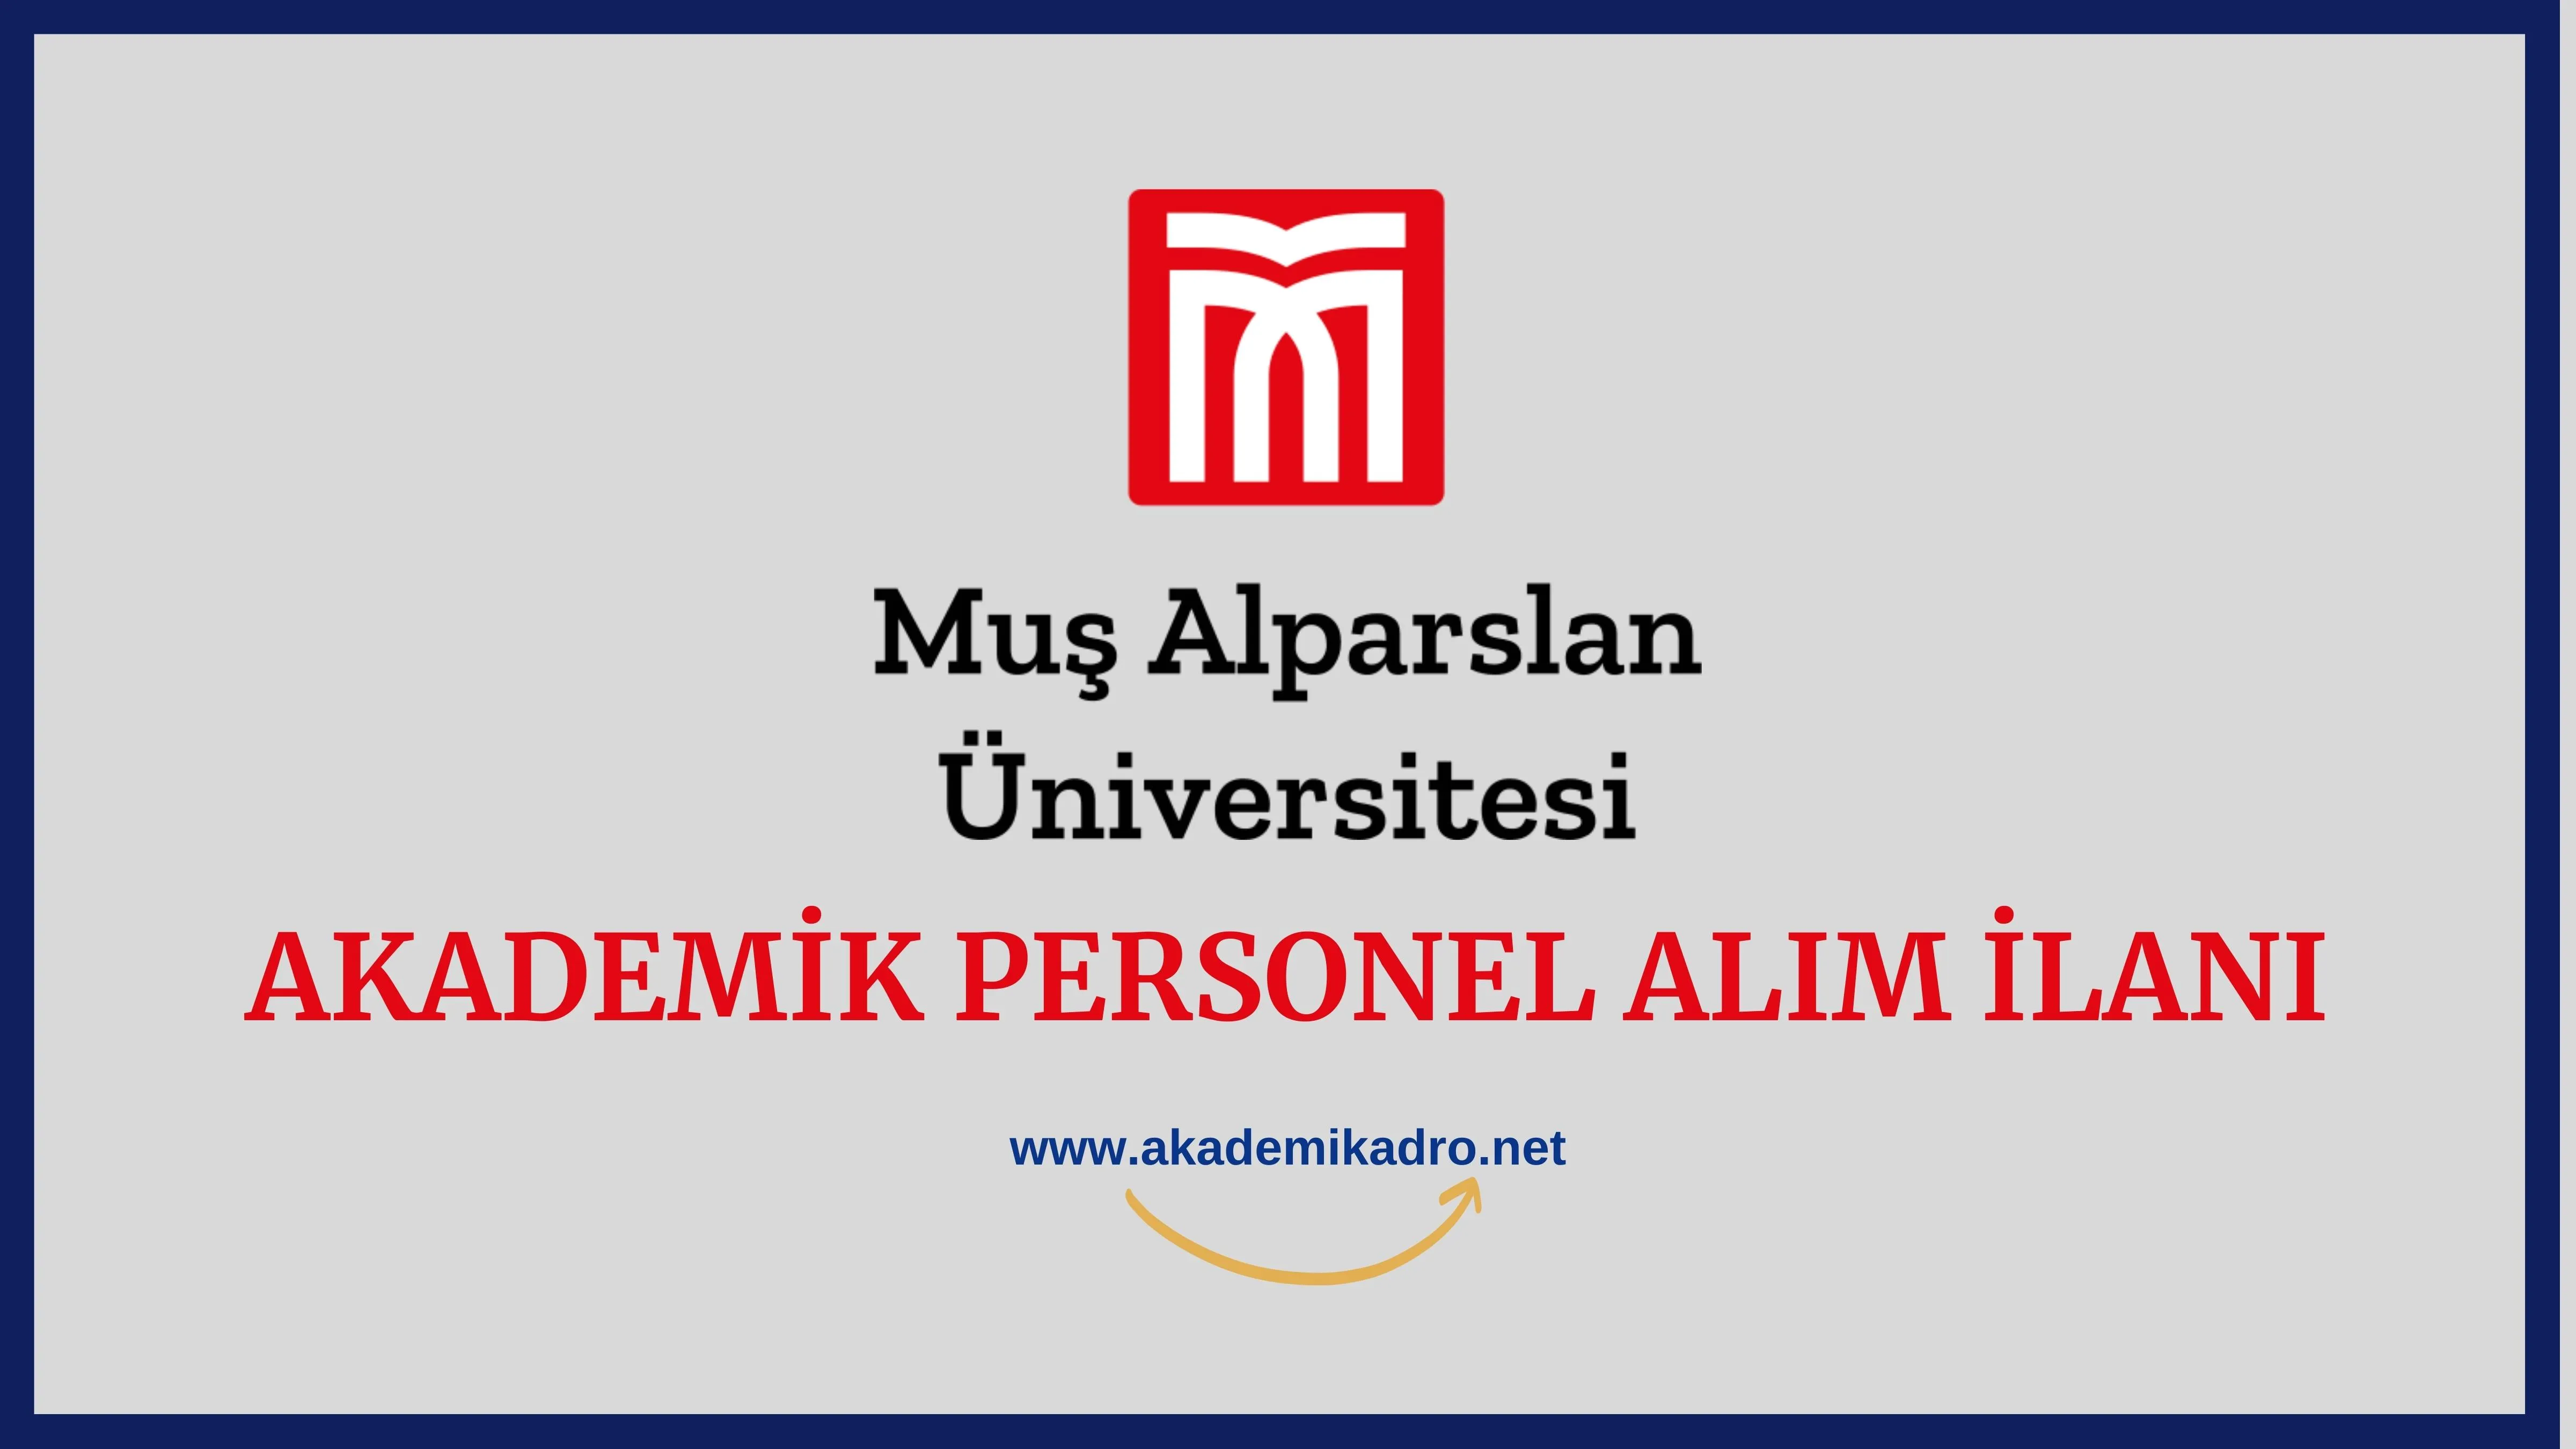 Muş Alparslan Üniversitesi birçok alandan 32 akademik personel alacak.